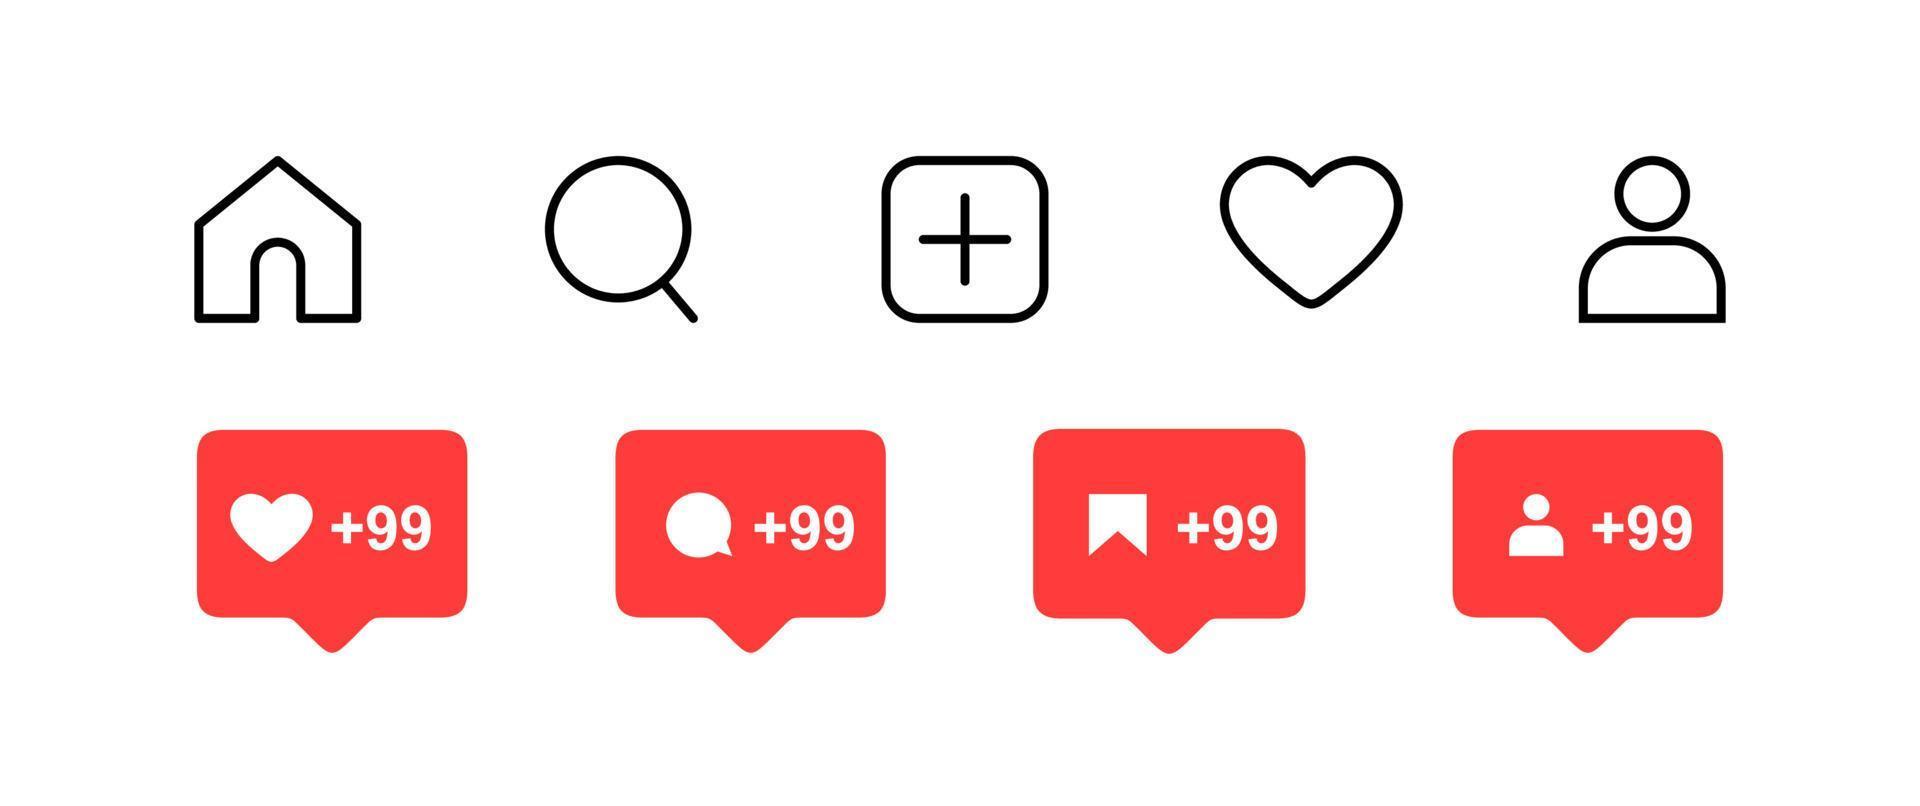 los iconos planos de las redes sociales establecen la burbuja del discurso de notificación para compartir guardar los botones de comentarios cámara buscar corazón hogar web símbolos e iconos vector libre